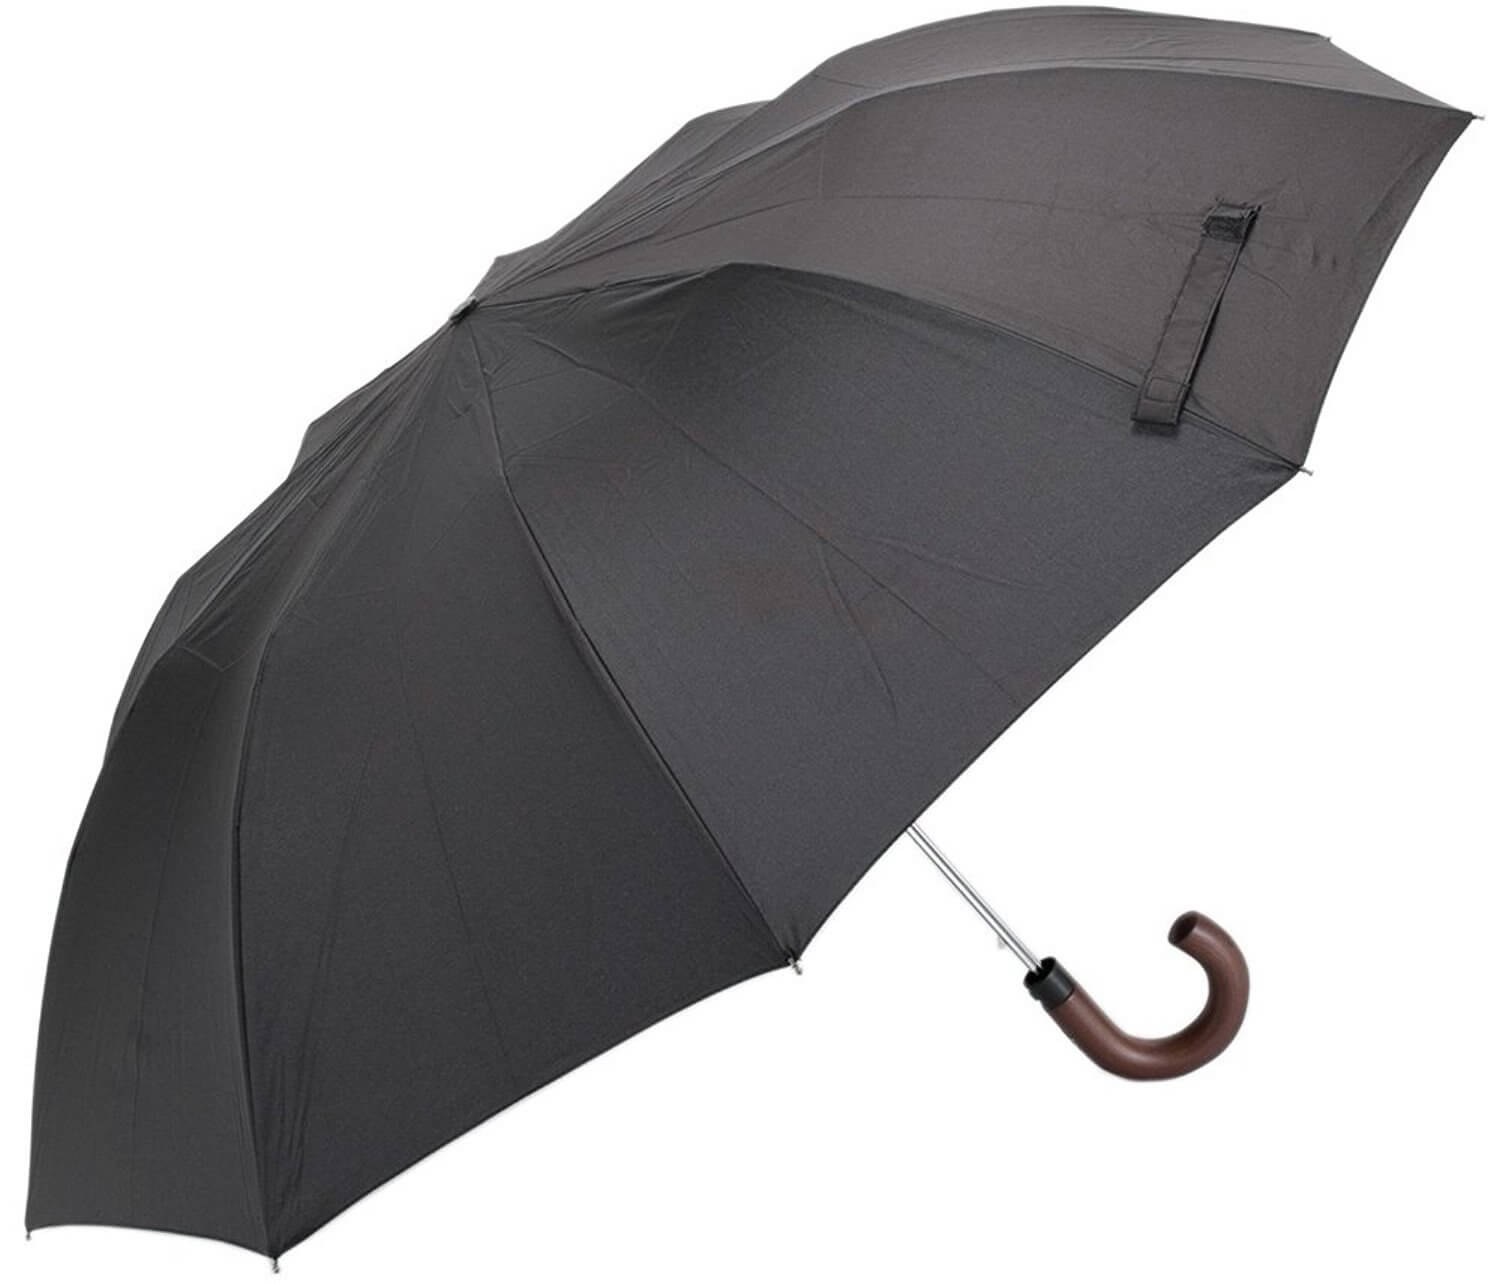 折りたたみ傘はスマートな男の必需品 おすすめブランドのアイテムを紹介 メンズファッションメディア Iicfiicf 男前研究所